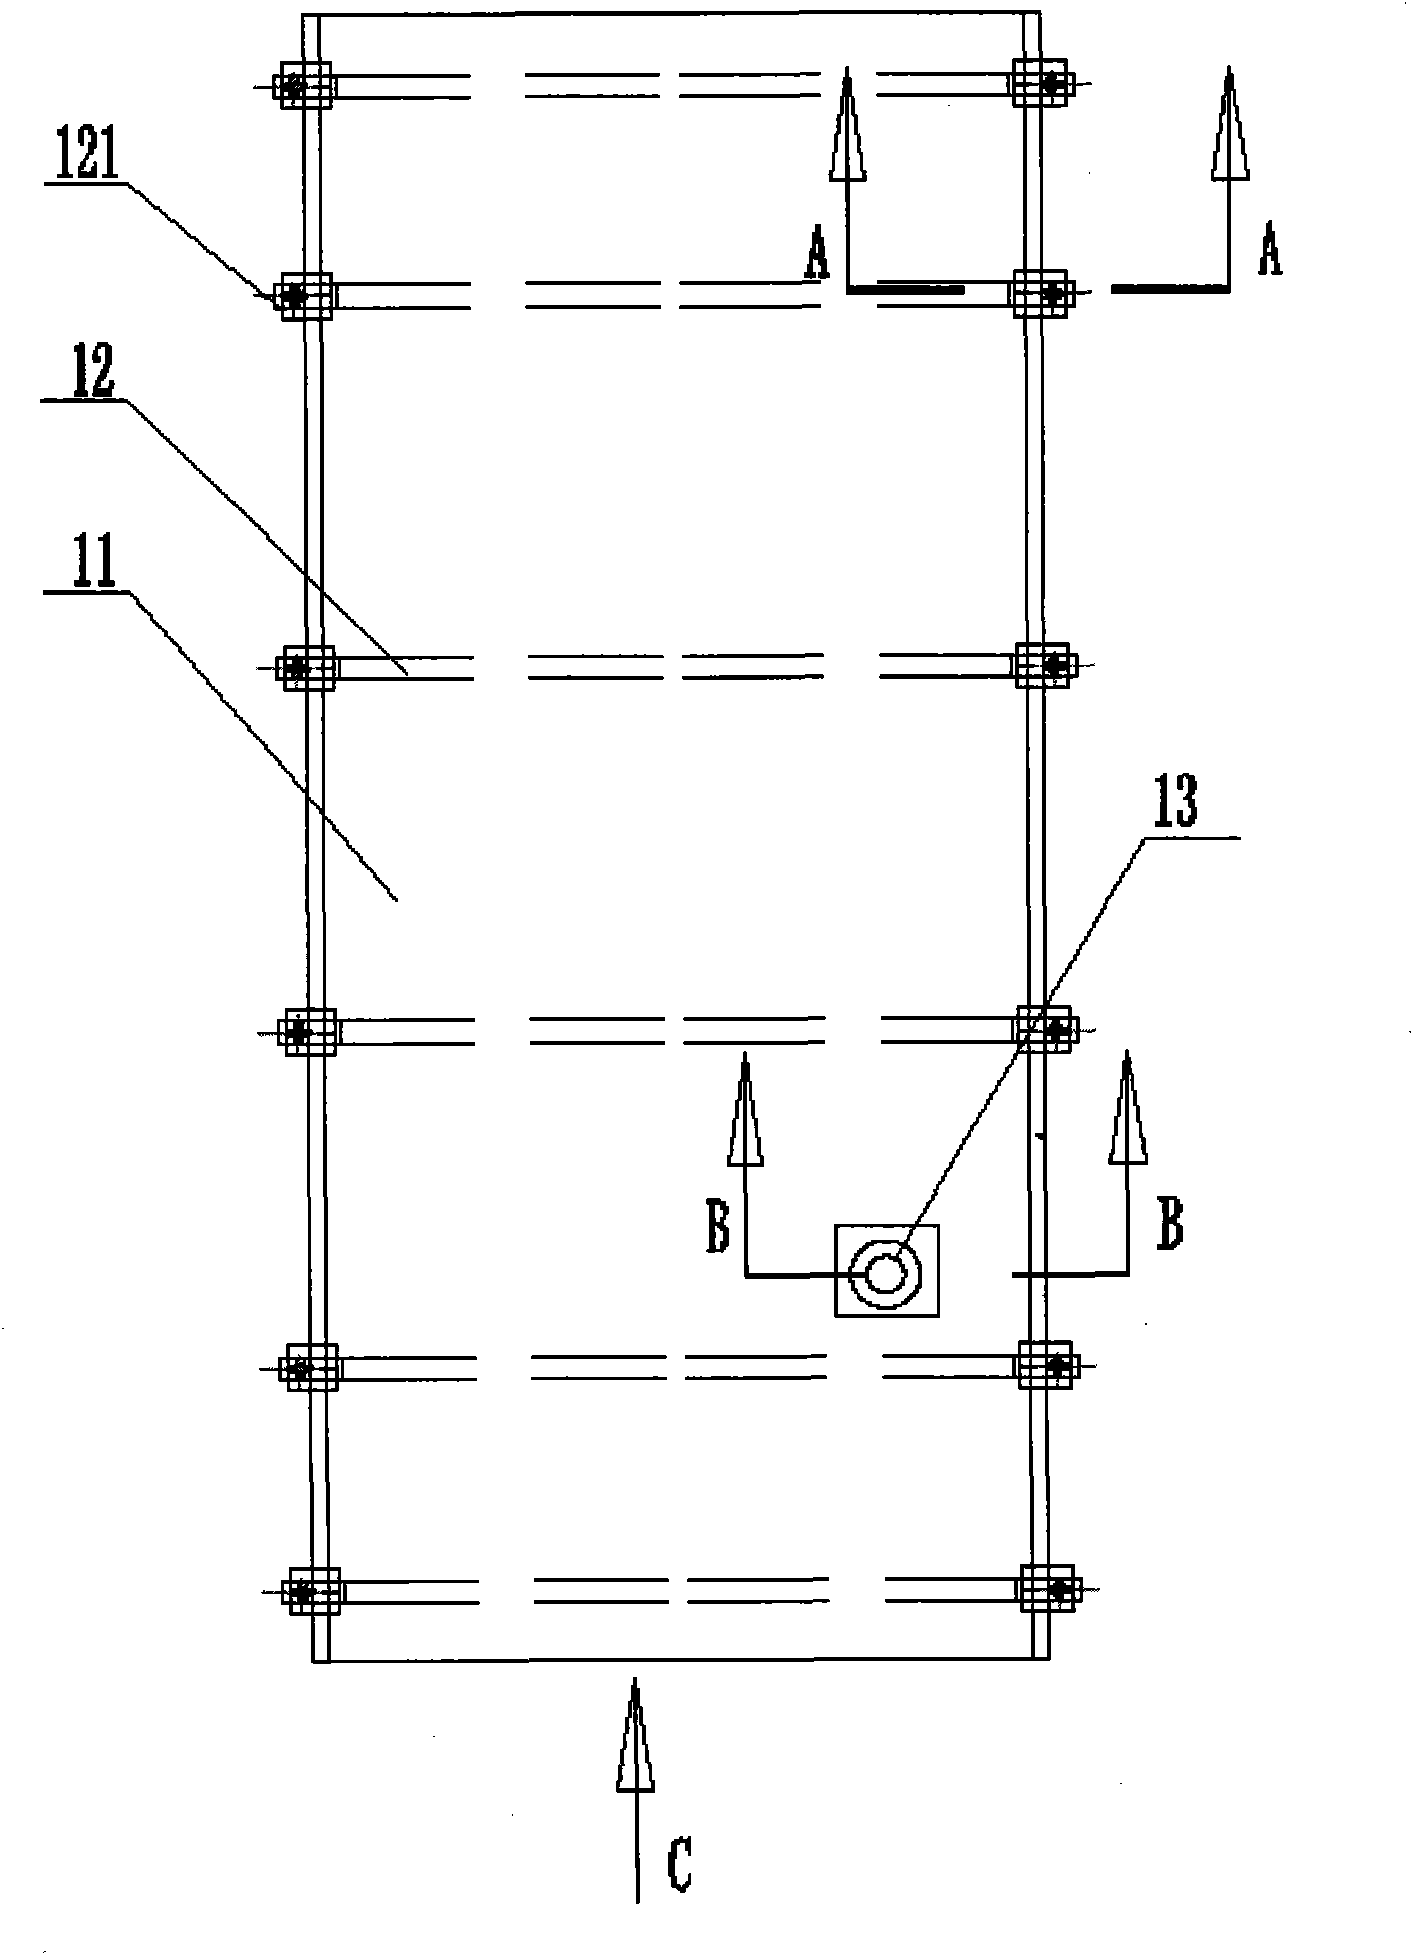 Method for assembling railway passenger car modular floors